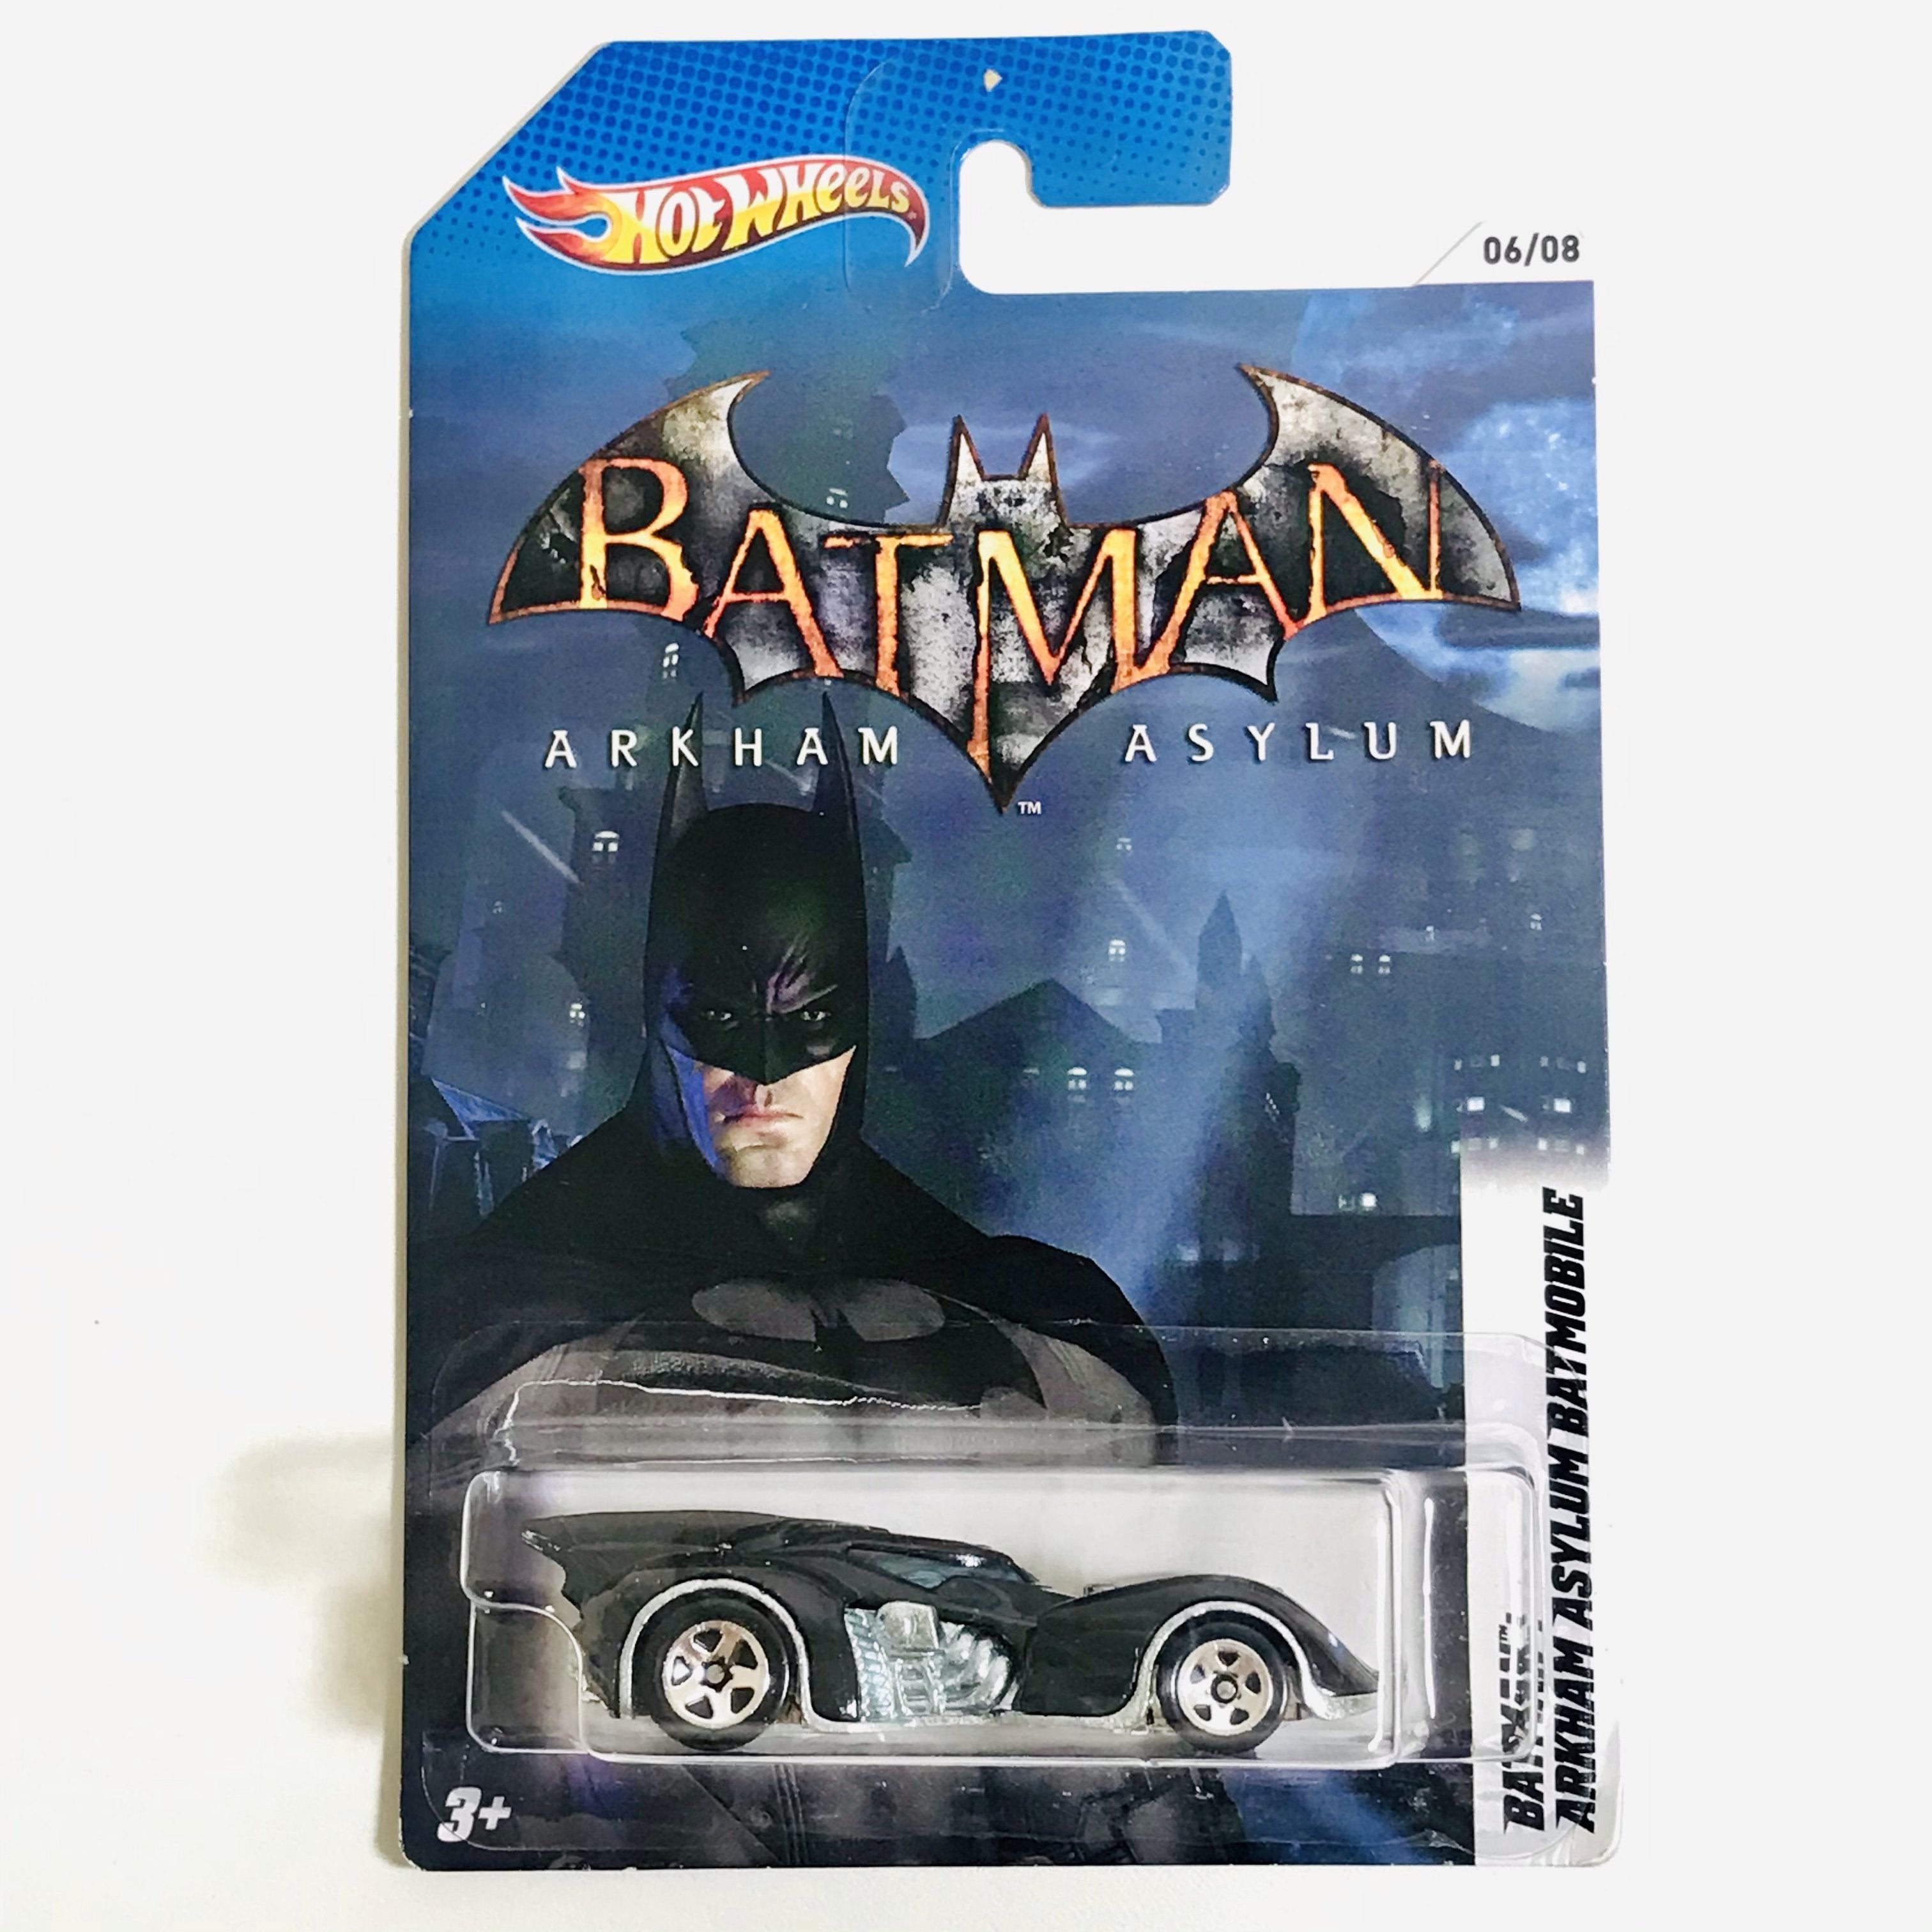 2012 Hot Wheels Batman Vehicles Then and Now Batman Arkham Asylum Batm